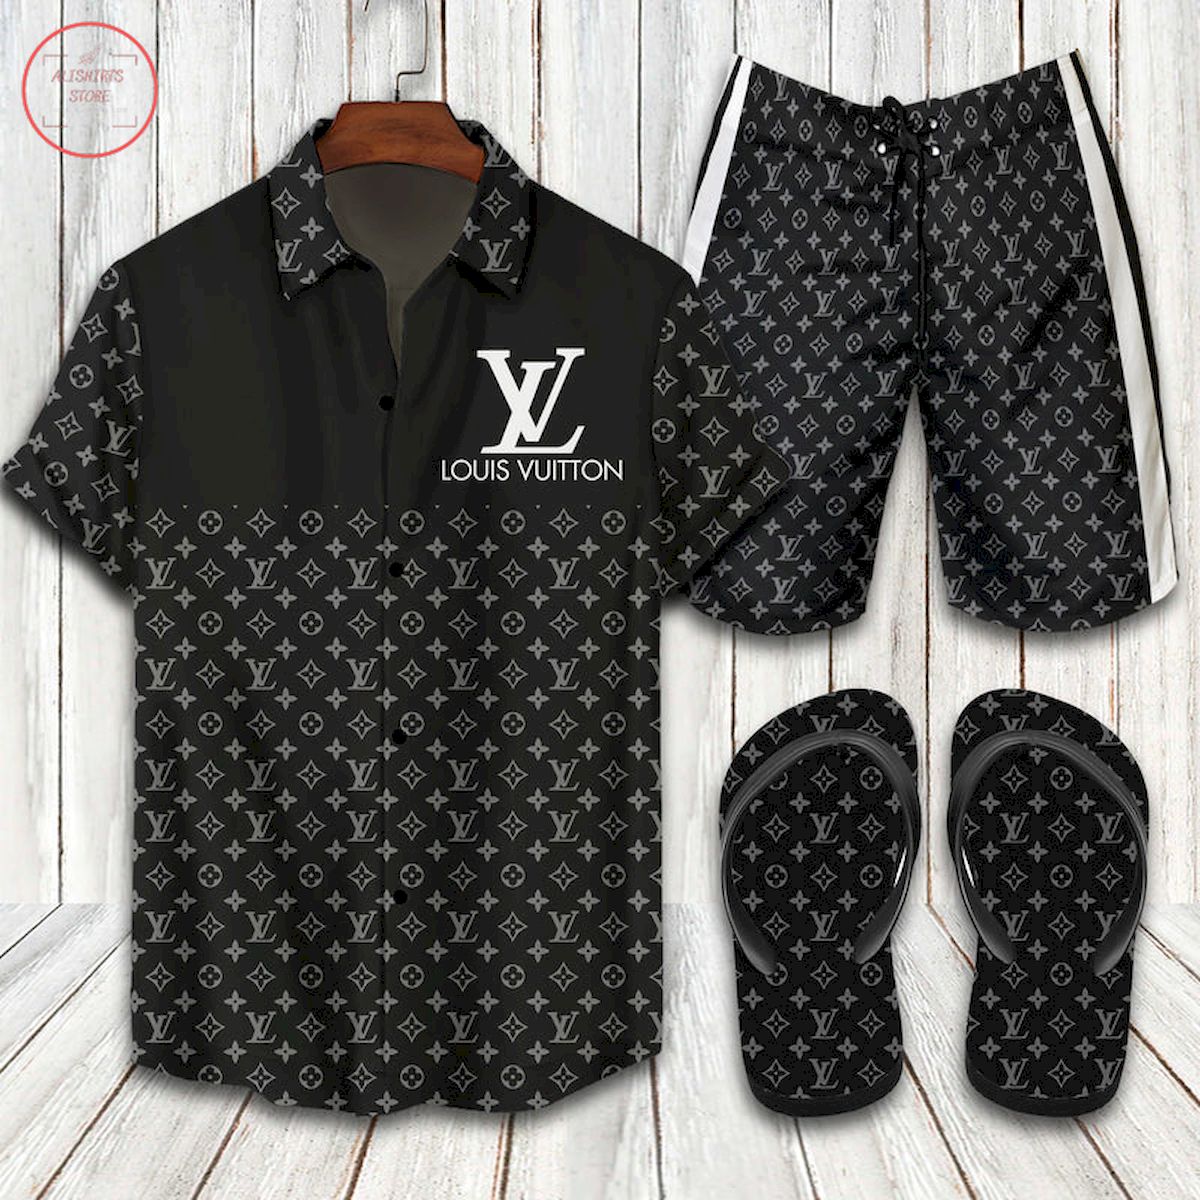 Louis Vuitton All Black Hawaiian Shirt Shorts And Flip Flops